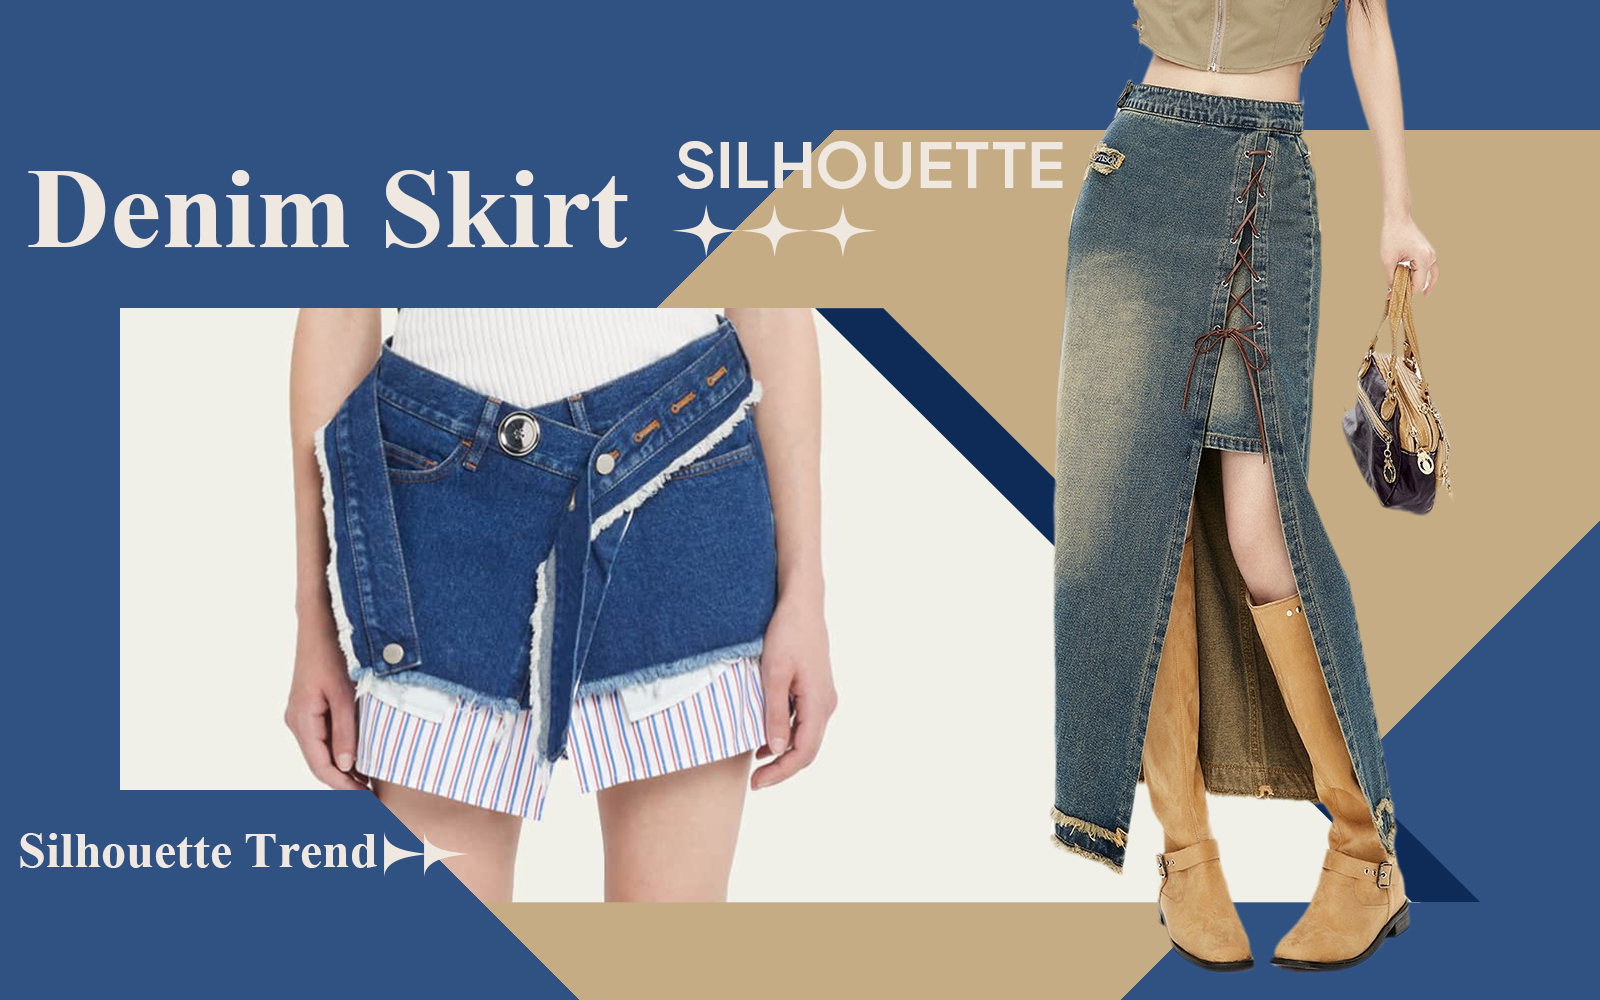 The Silhouette Trend for Women's Denim Skirt